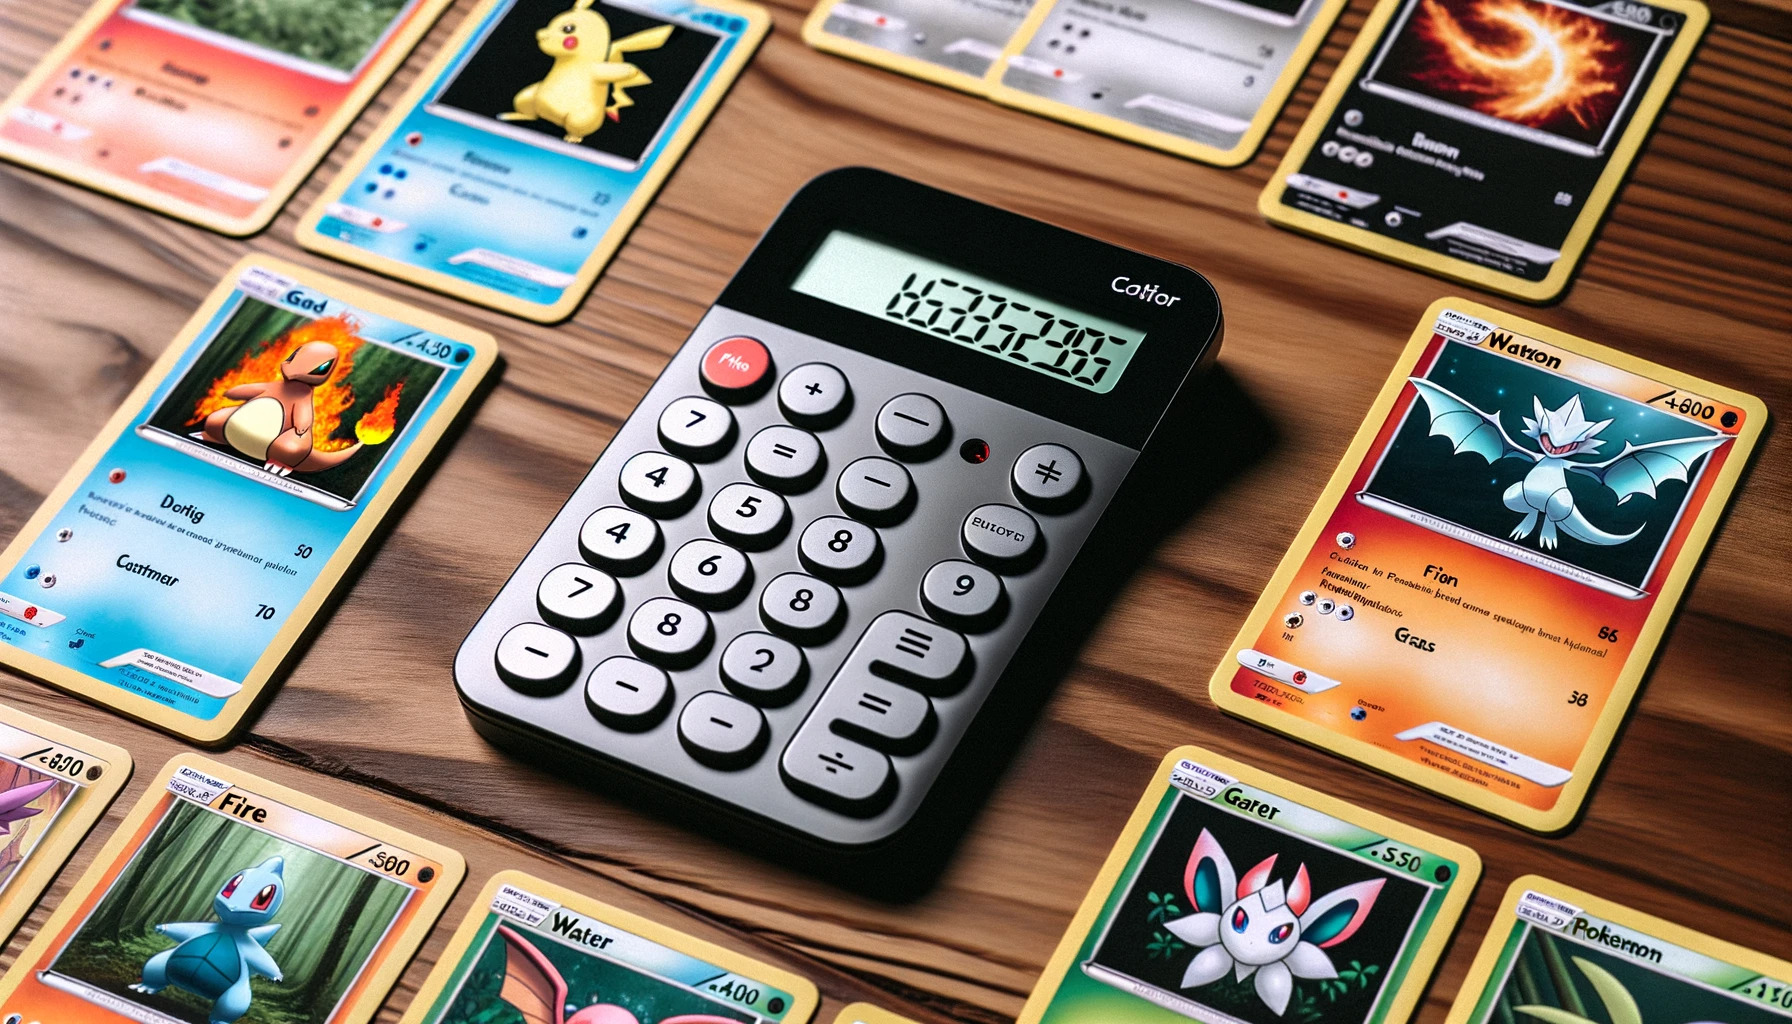 A G Z universe: Pokemon type coverage calculator